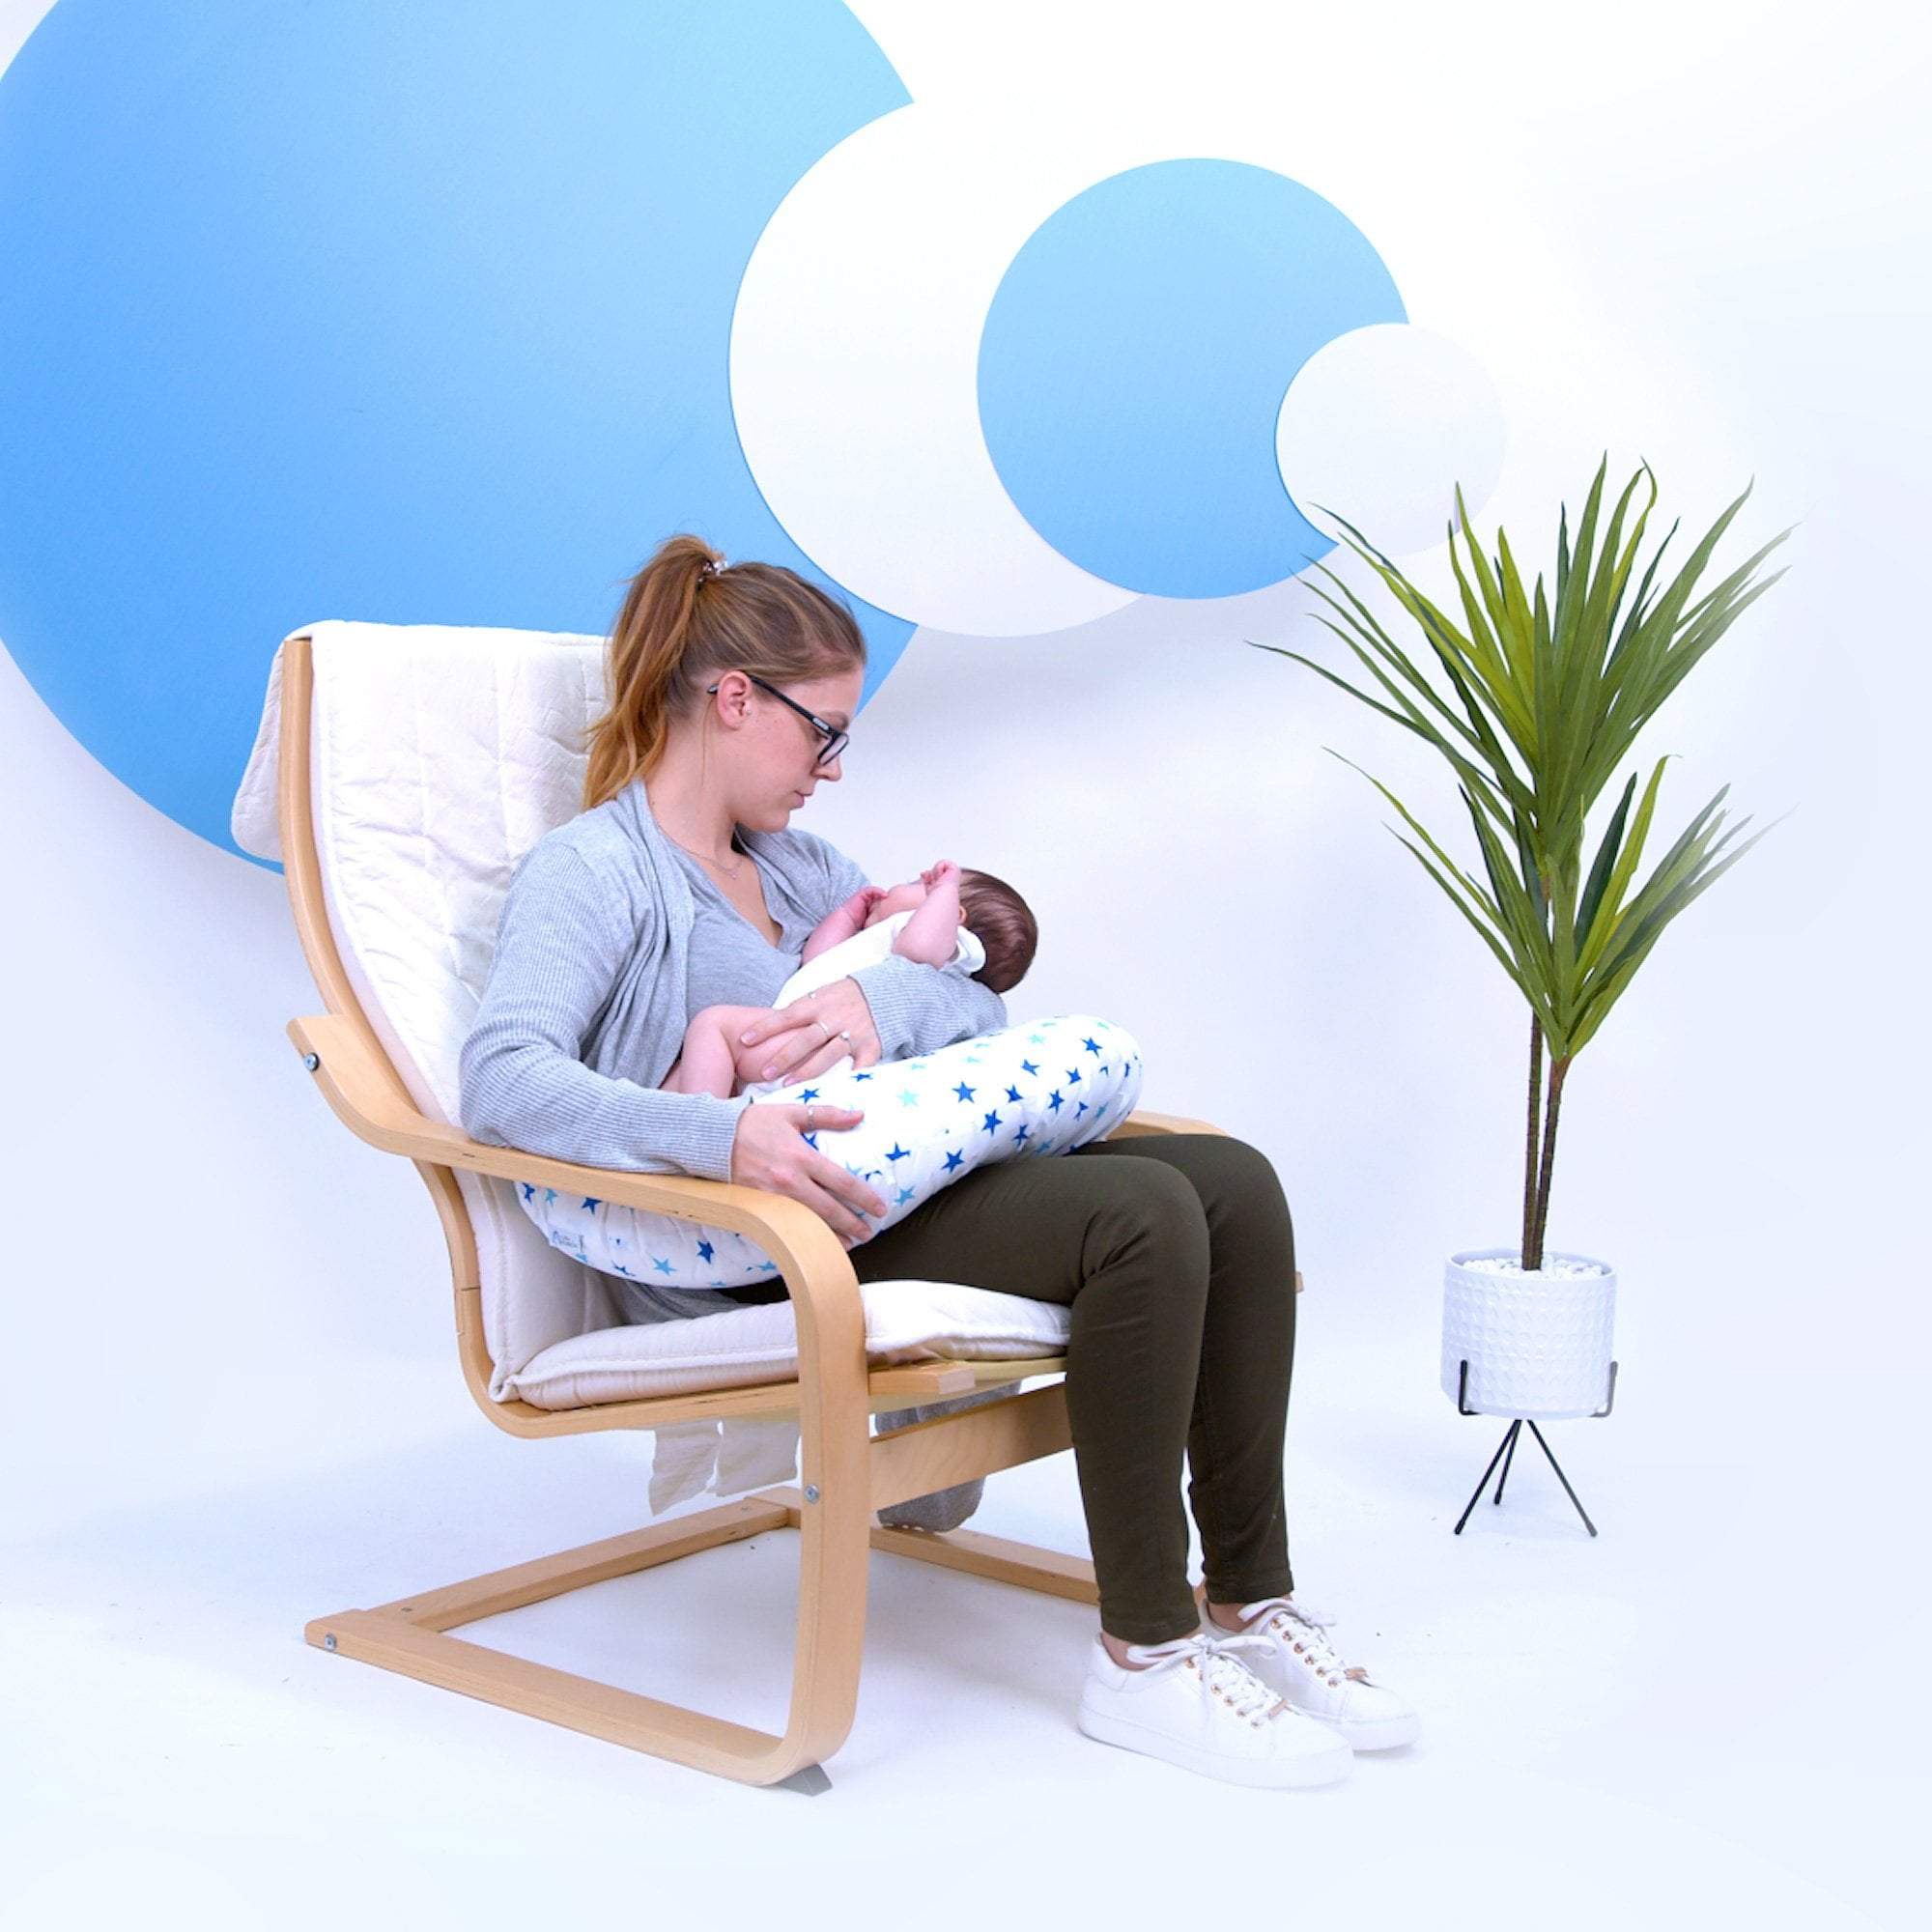 Breast Feeding Maternity Nursing Pillow - Little Star Blue - For Your Little One